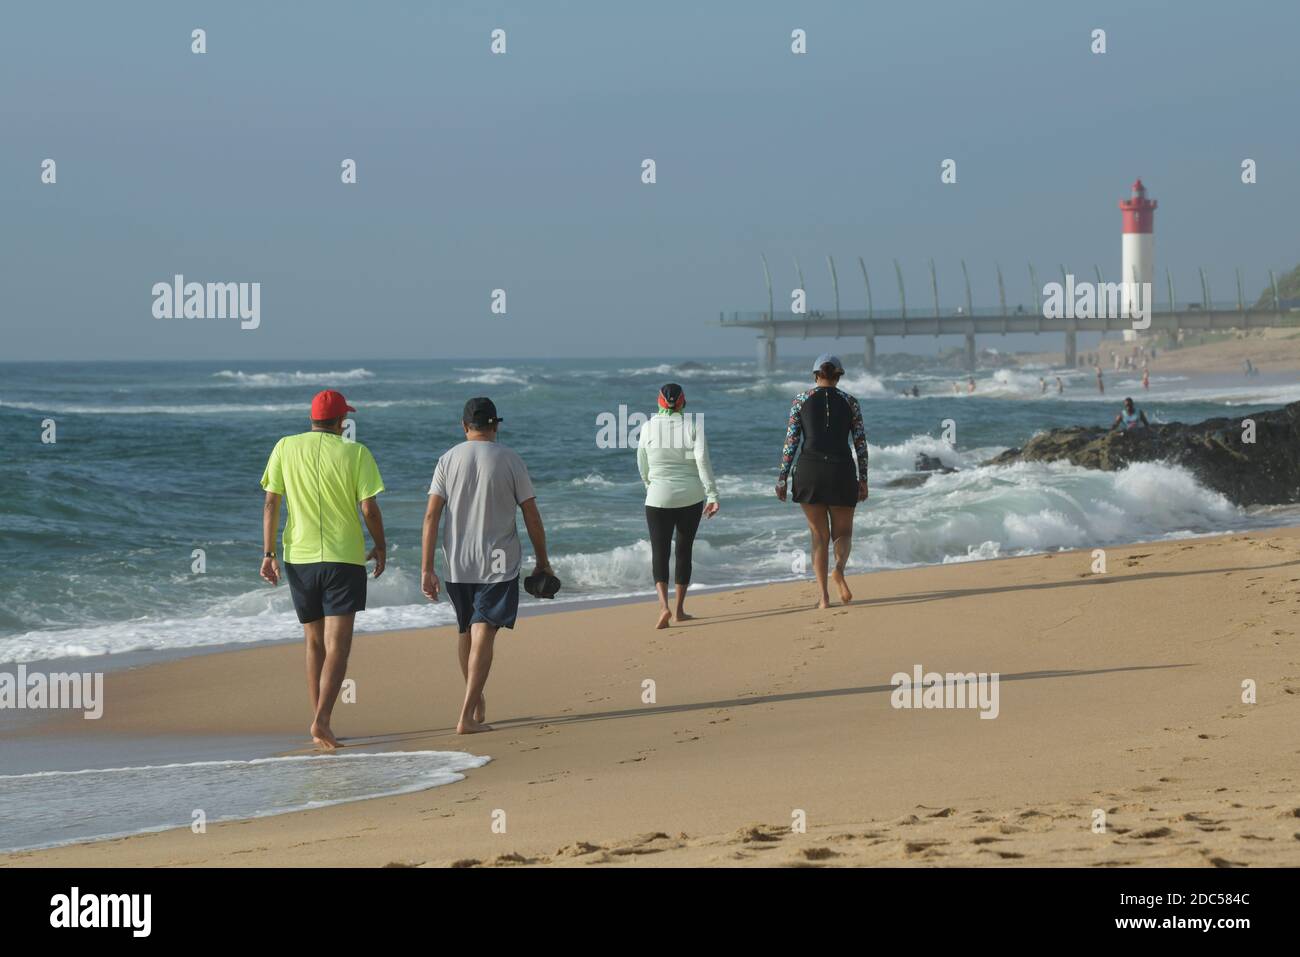 Reife Freunde Wandern am schönen Strand, Freizeit am Meer, Umhlanga Rocks Waterfront, Durban, Südafrika, Urlaubsziel, Männer, Frauen Stockfoto